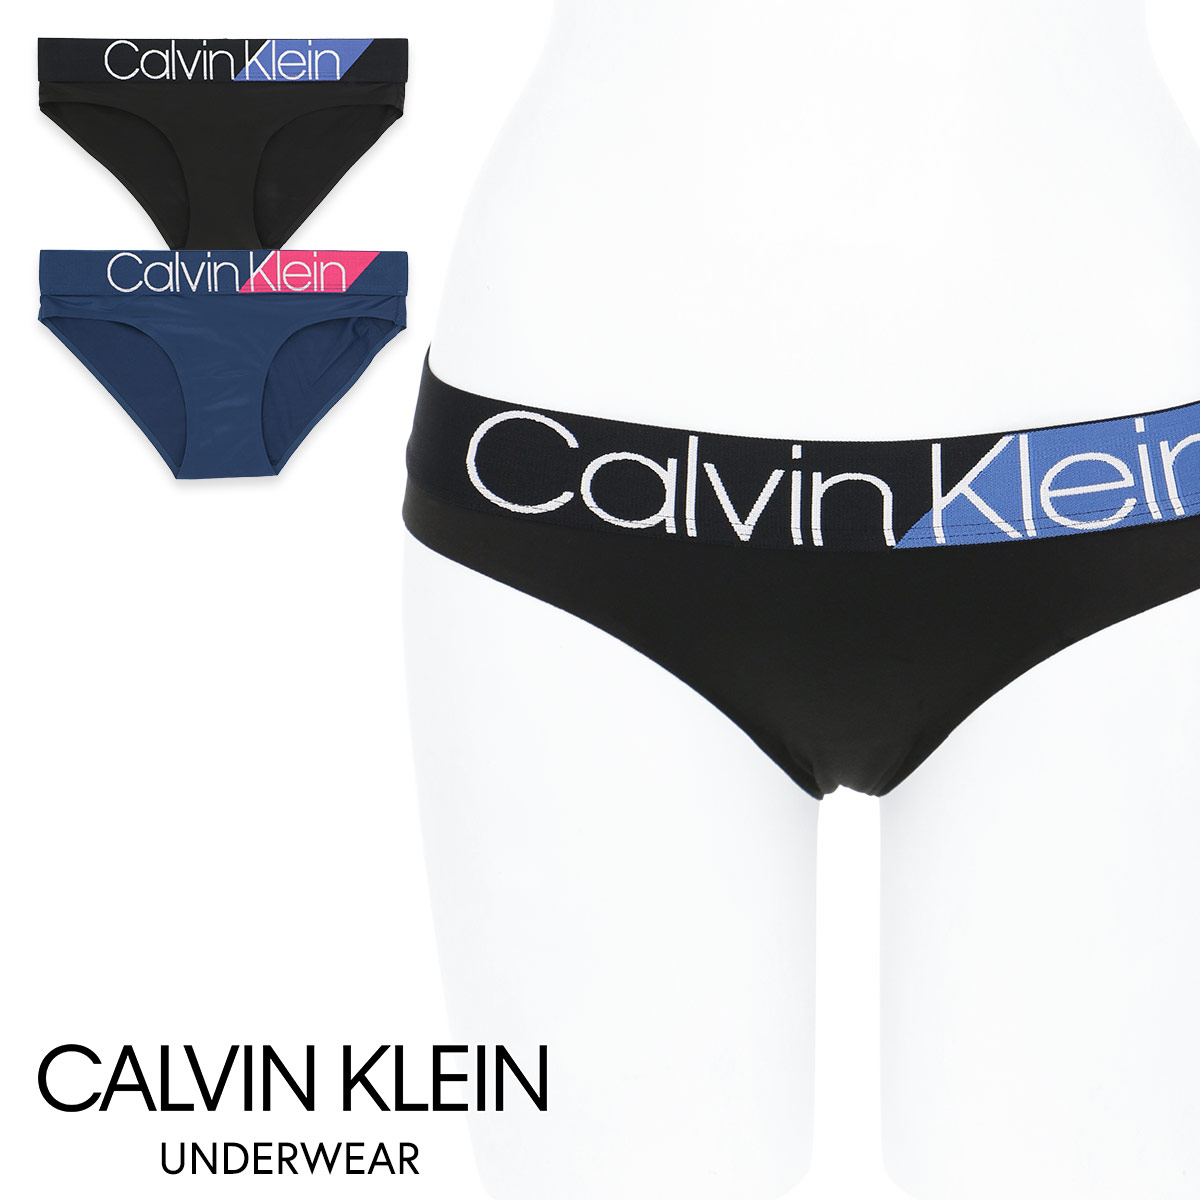 calvin klein underwear sale womens